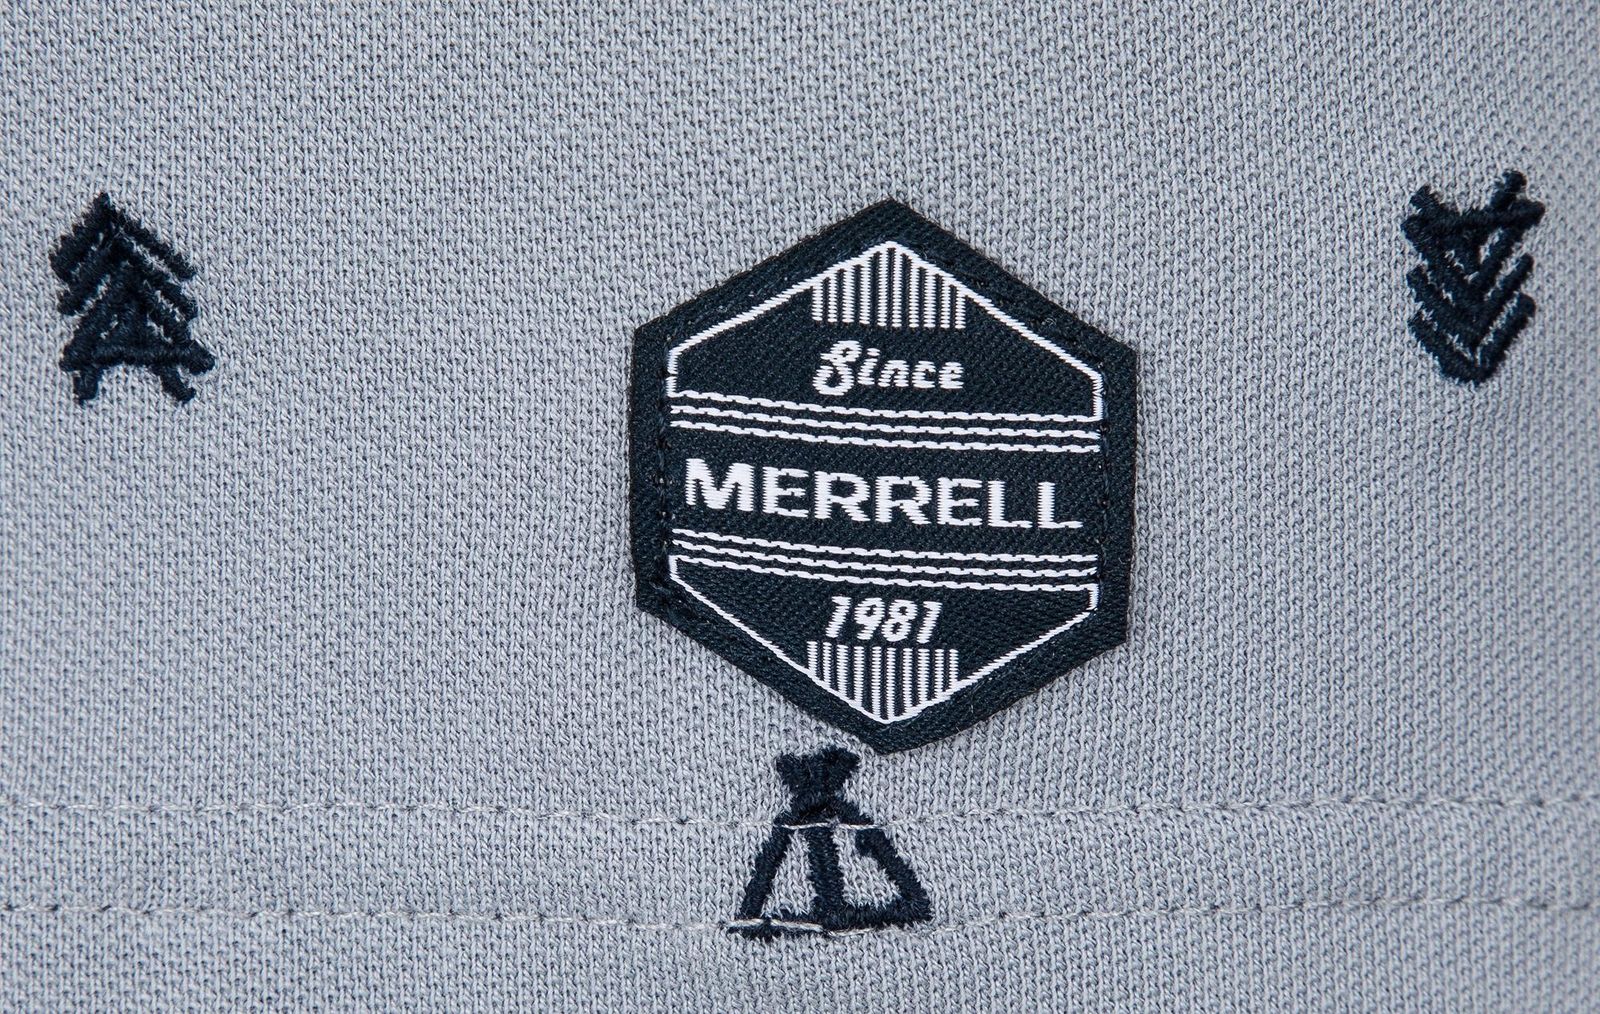   Merrell Men's Polo, : . S19AMRPOM01-Q1.  52